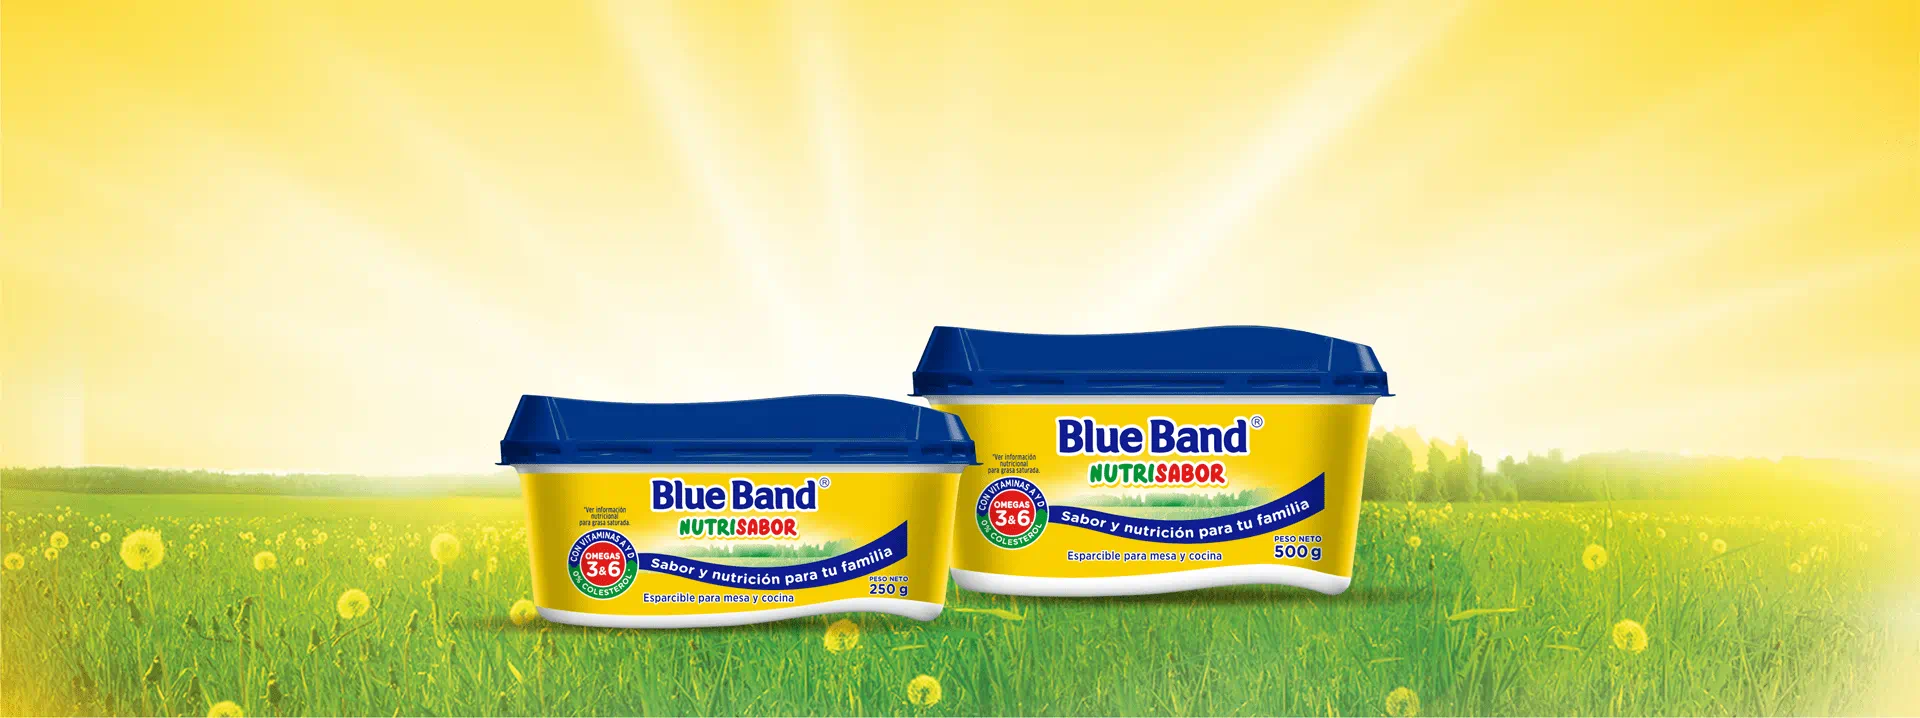 Blue Band Orginal